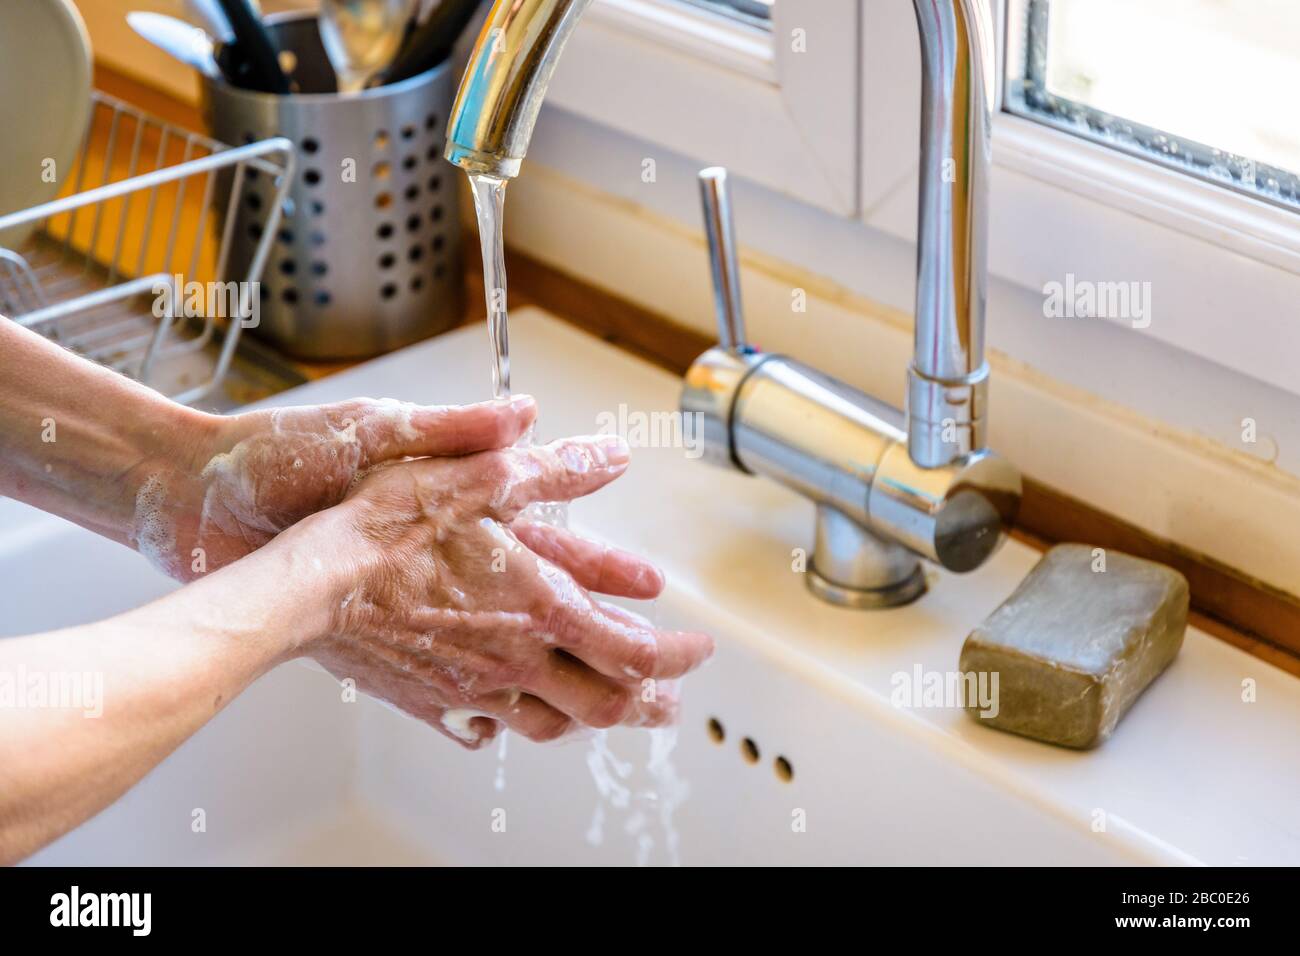 Vista de cerca en las manos de una mujer lavándose las manos completamente con jabón bajo el grifo del fregadero de la cocina. Foto de stock